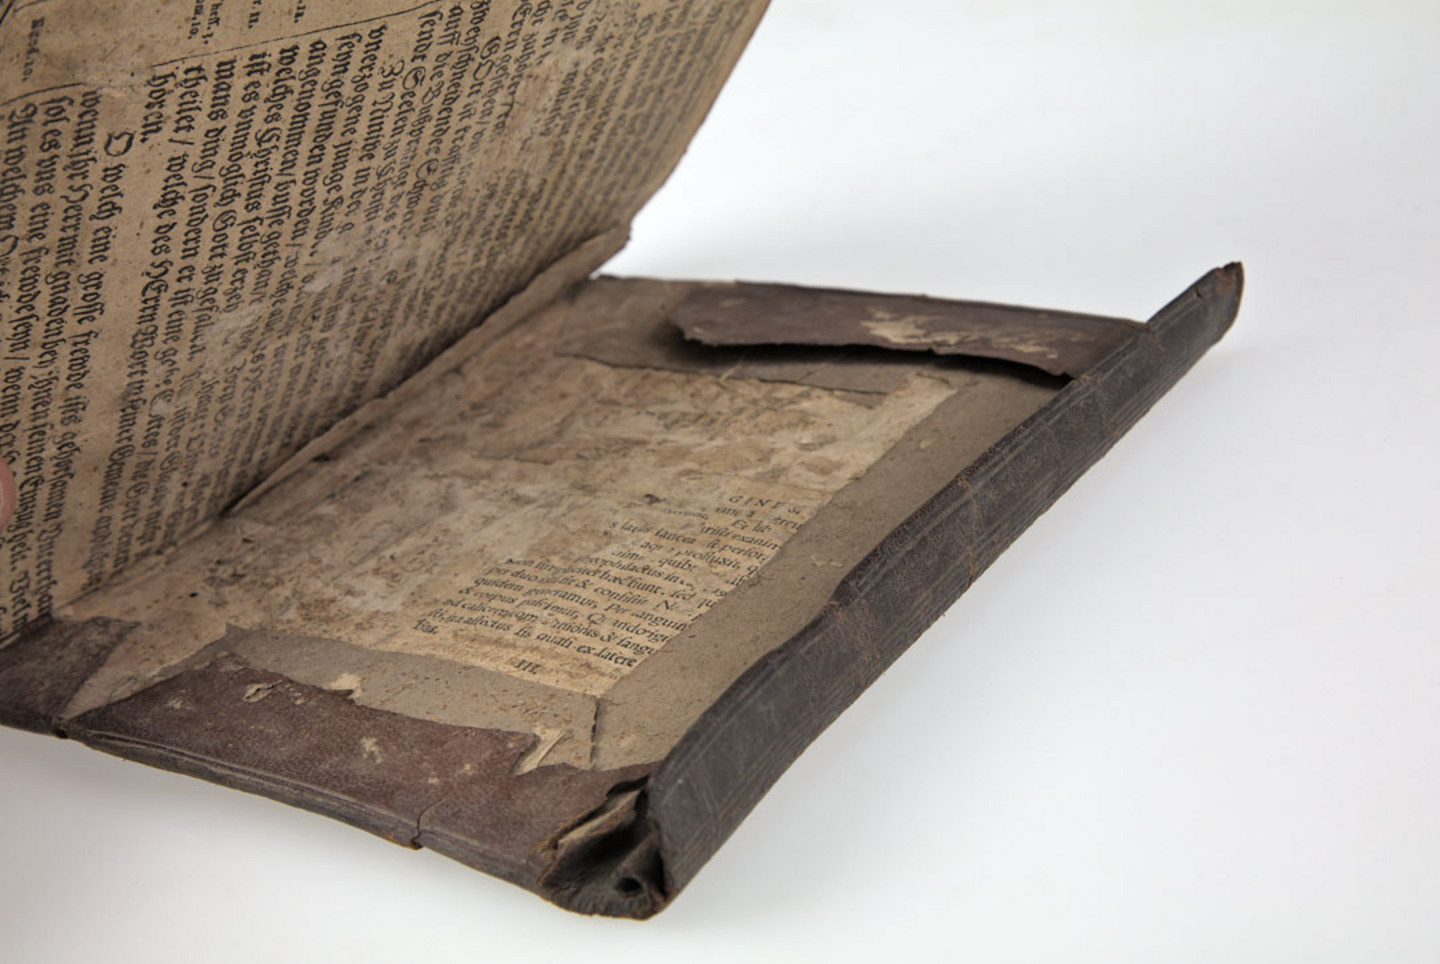 Foto eines historischen, beschädigten Buches aus dem Jahr 1736-49: Sammelband mit 19 Drucken Hólar 1736-49, aus der Bibliothek von Heinrich Erkes mit einem isländischen Rolleinband, 1686. Signatur: AD+I120